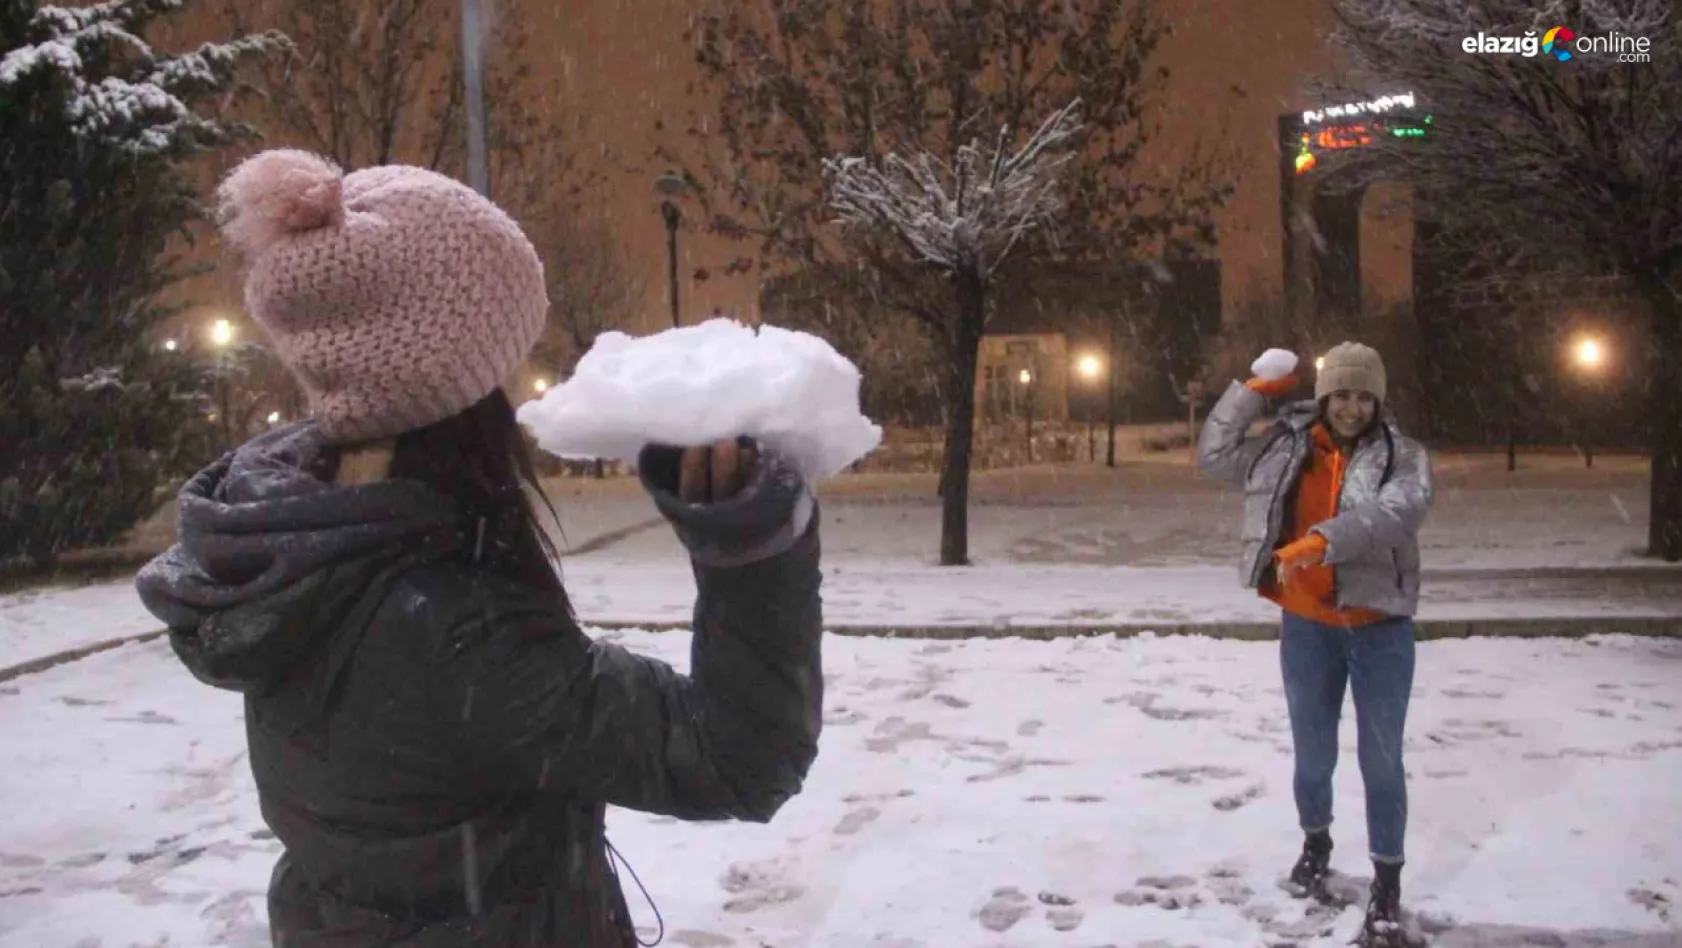 Elazığ'da yoğun kar yağışı etkili oldu, vatandaş doyasıya eğlendi